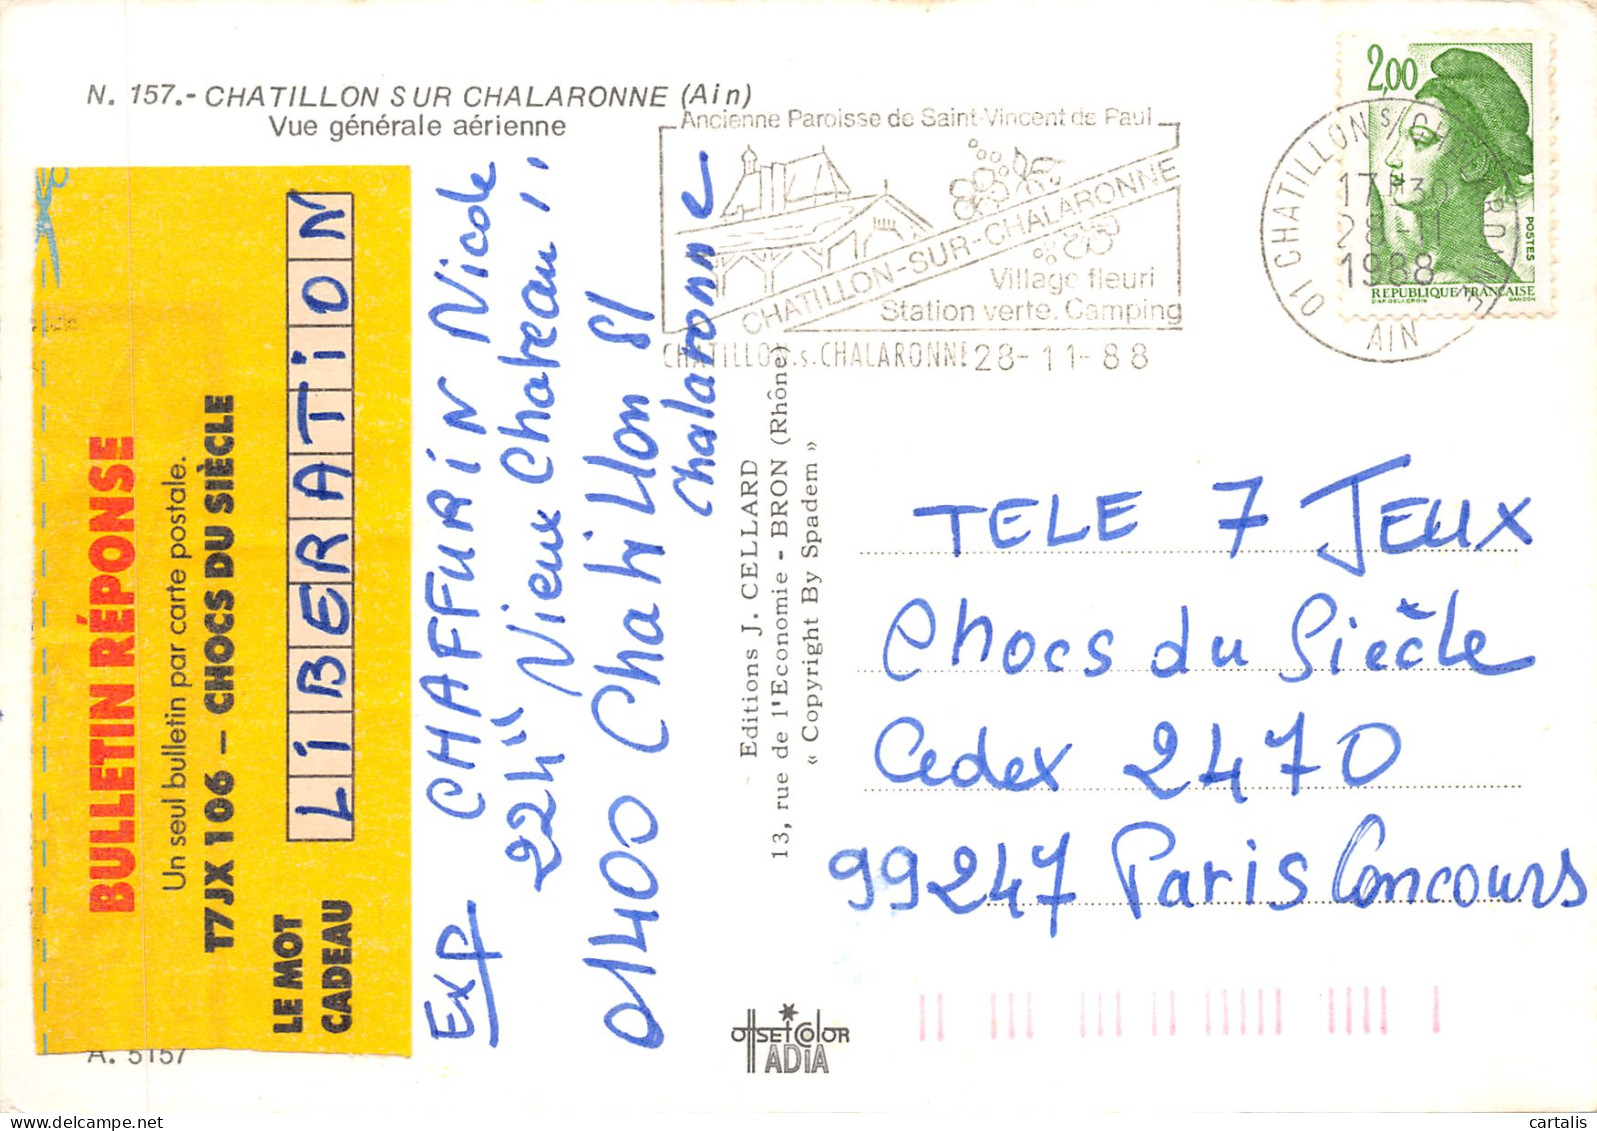 01-CHATILLON SUR CHALARONNE-N 596-A/0085 - Châtillon-sur-Chalaronne